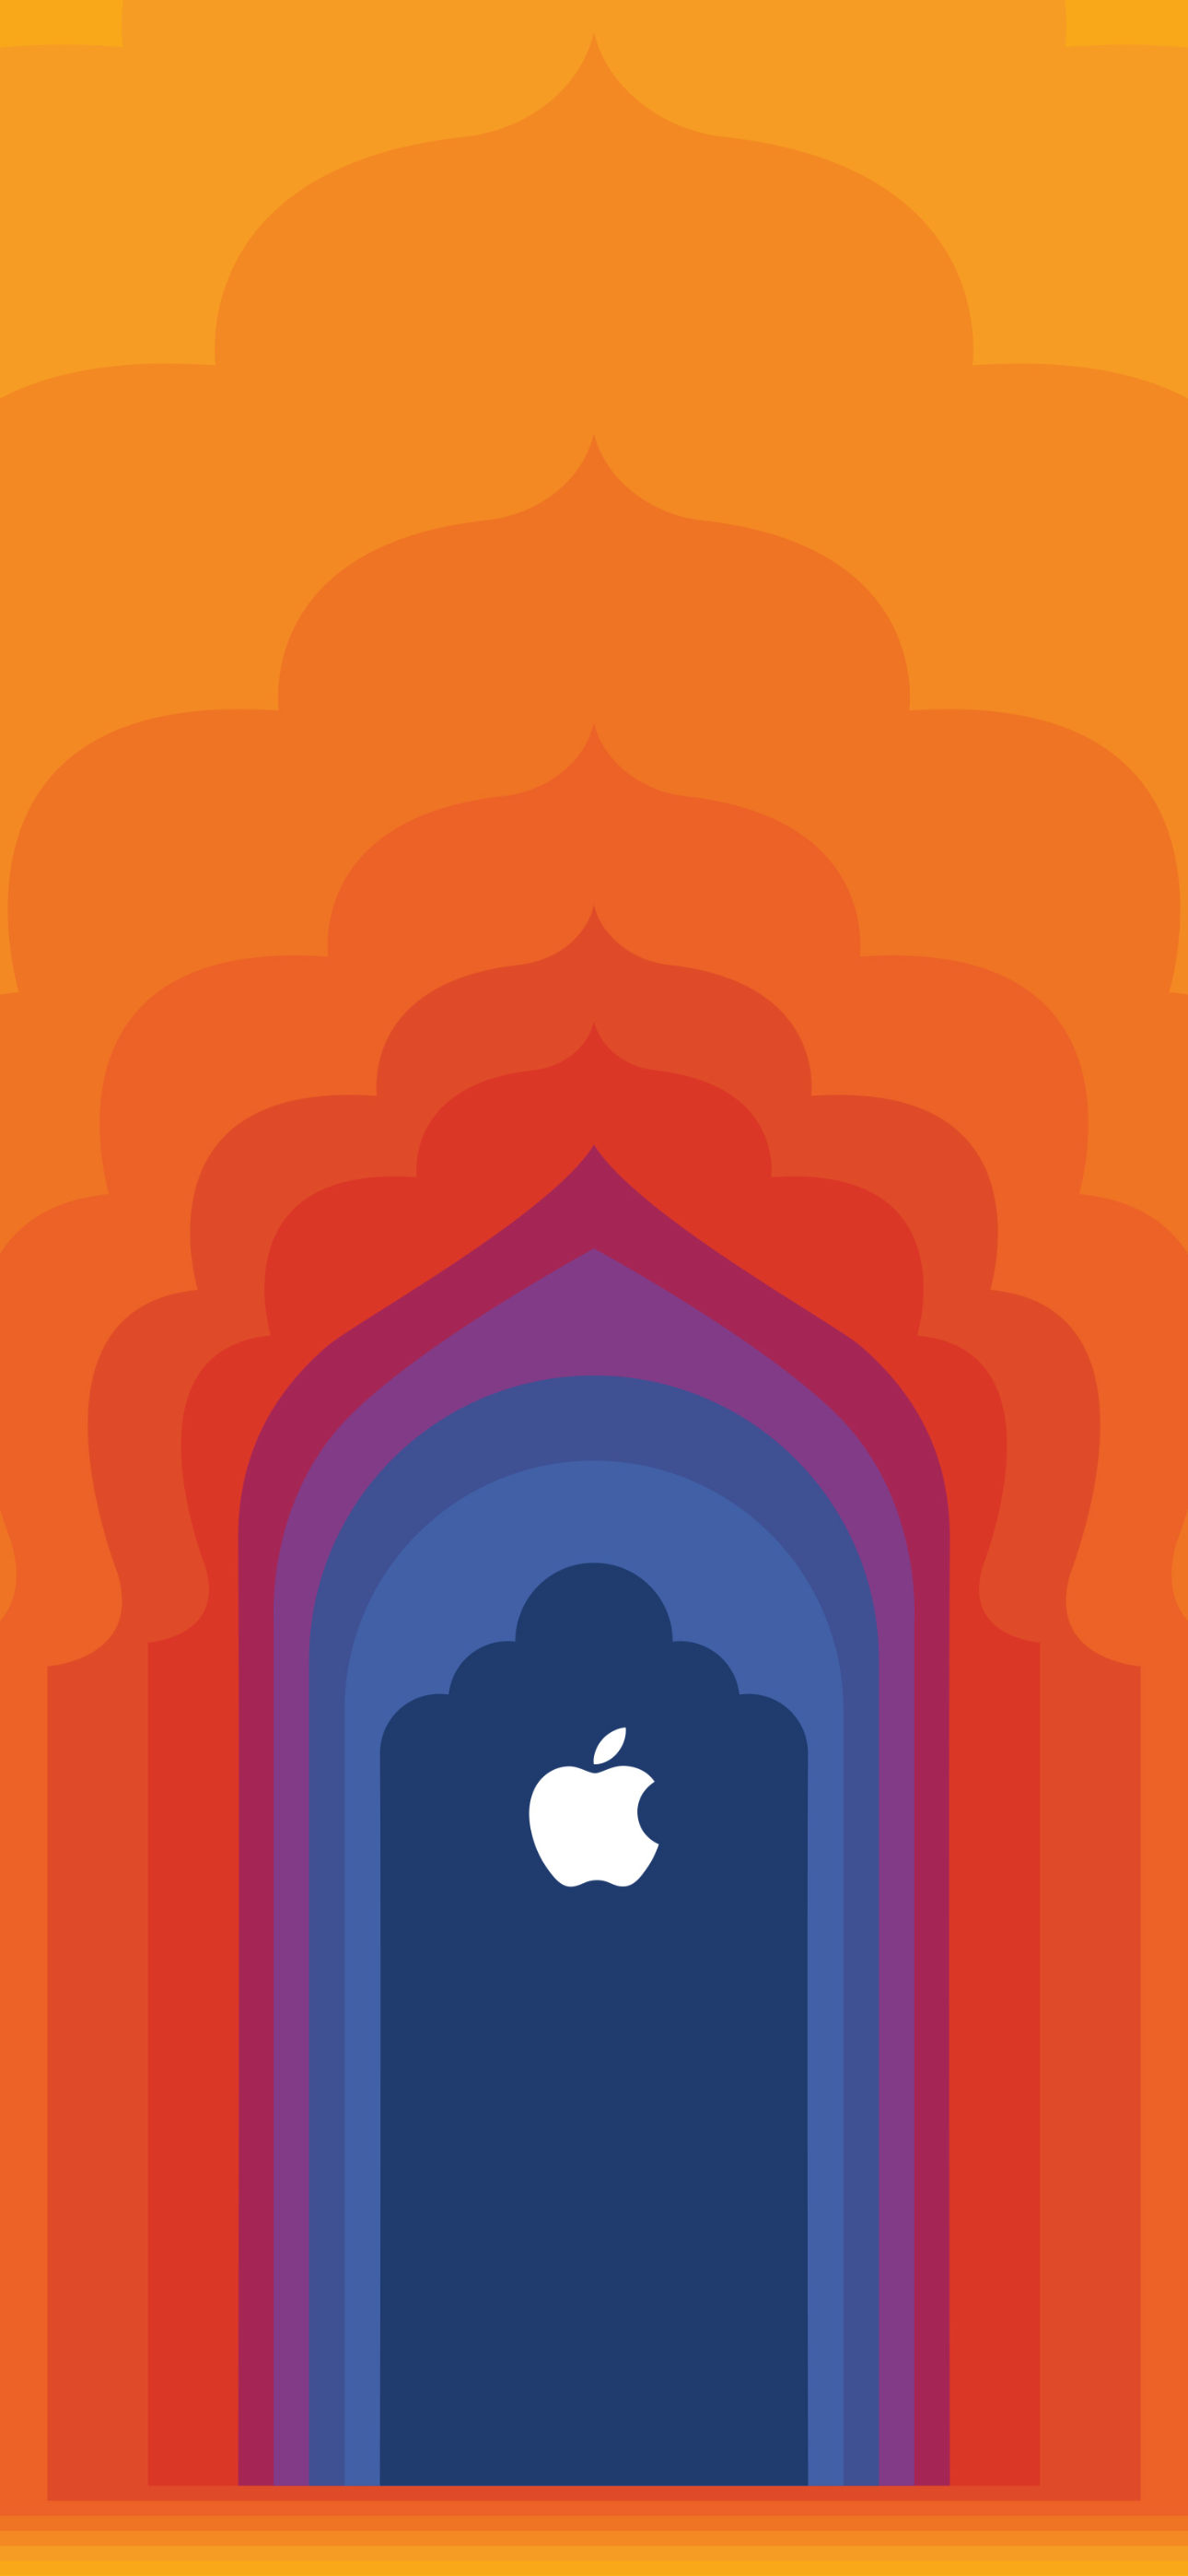 Apple Store Saket, New Delhi, India